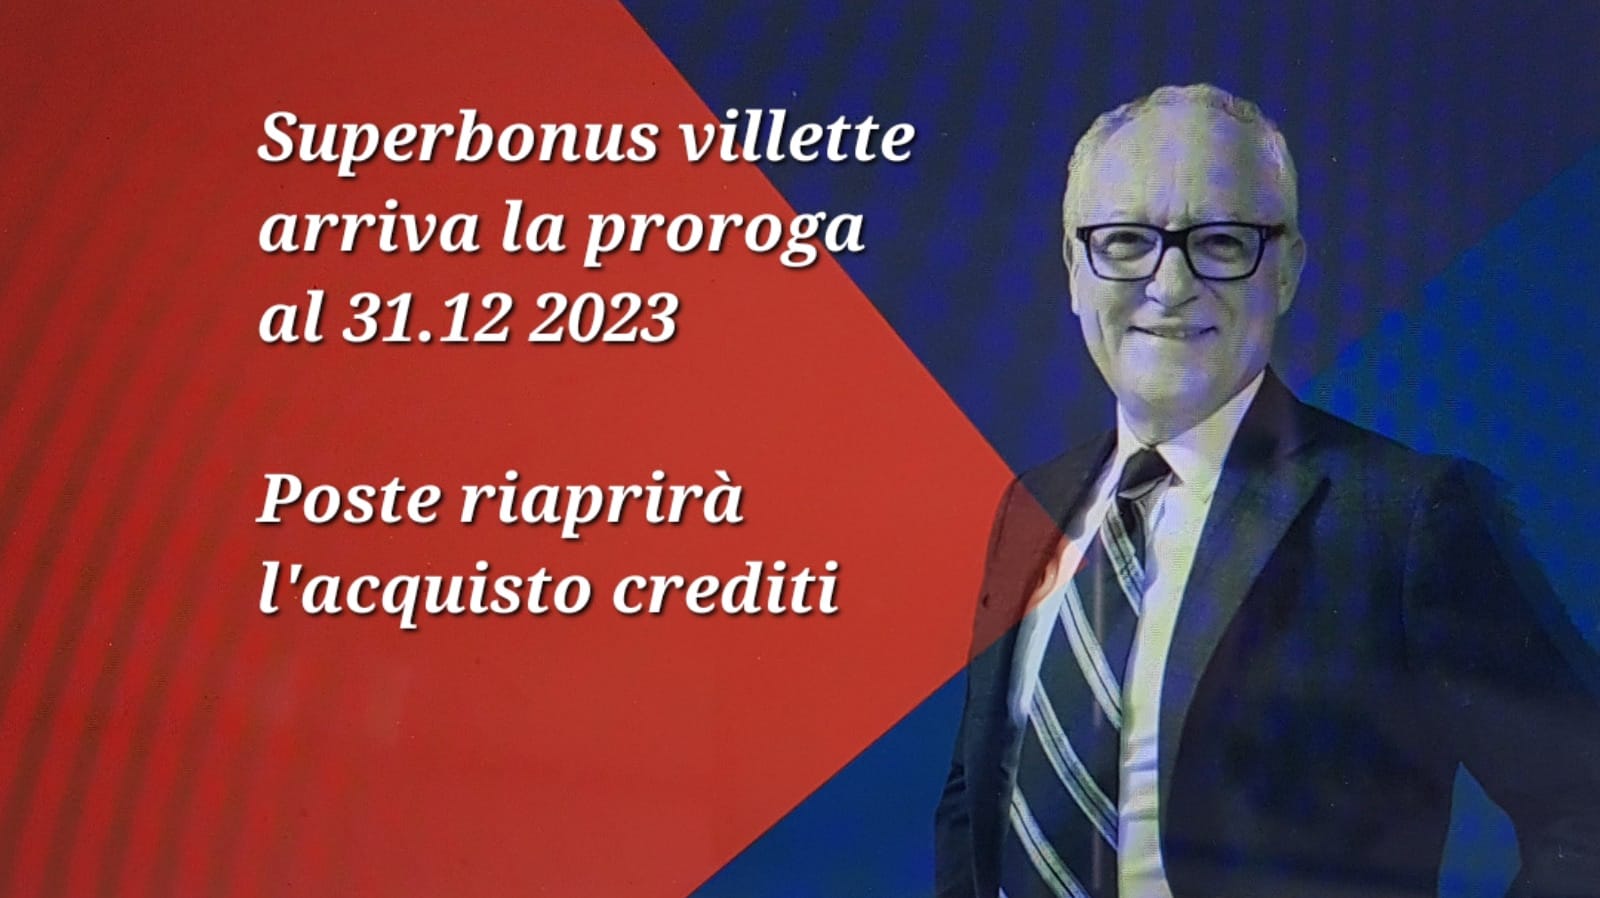 SUPERBONUS Proroga al 31 dicembre 2023 per le unifamiliari. Poste Italiane riaprirà l’acquisto dei crediti per i privati.